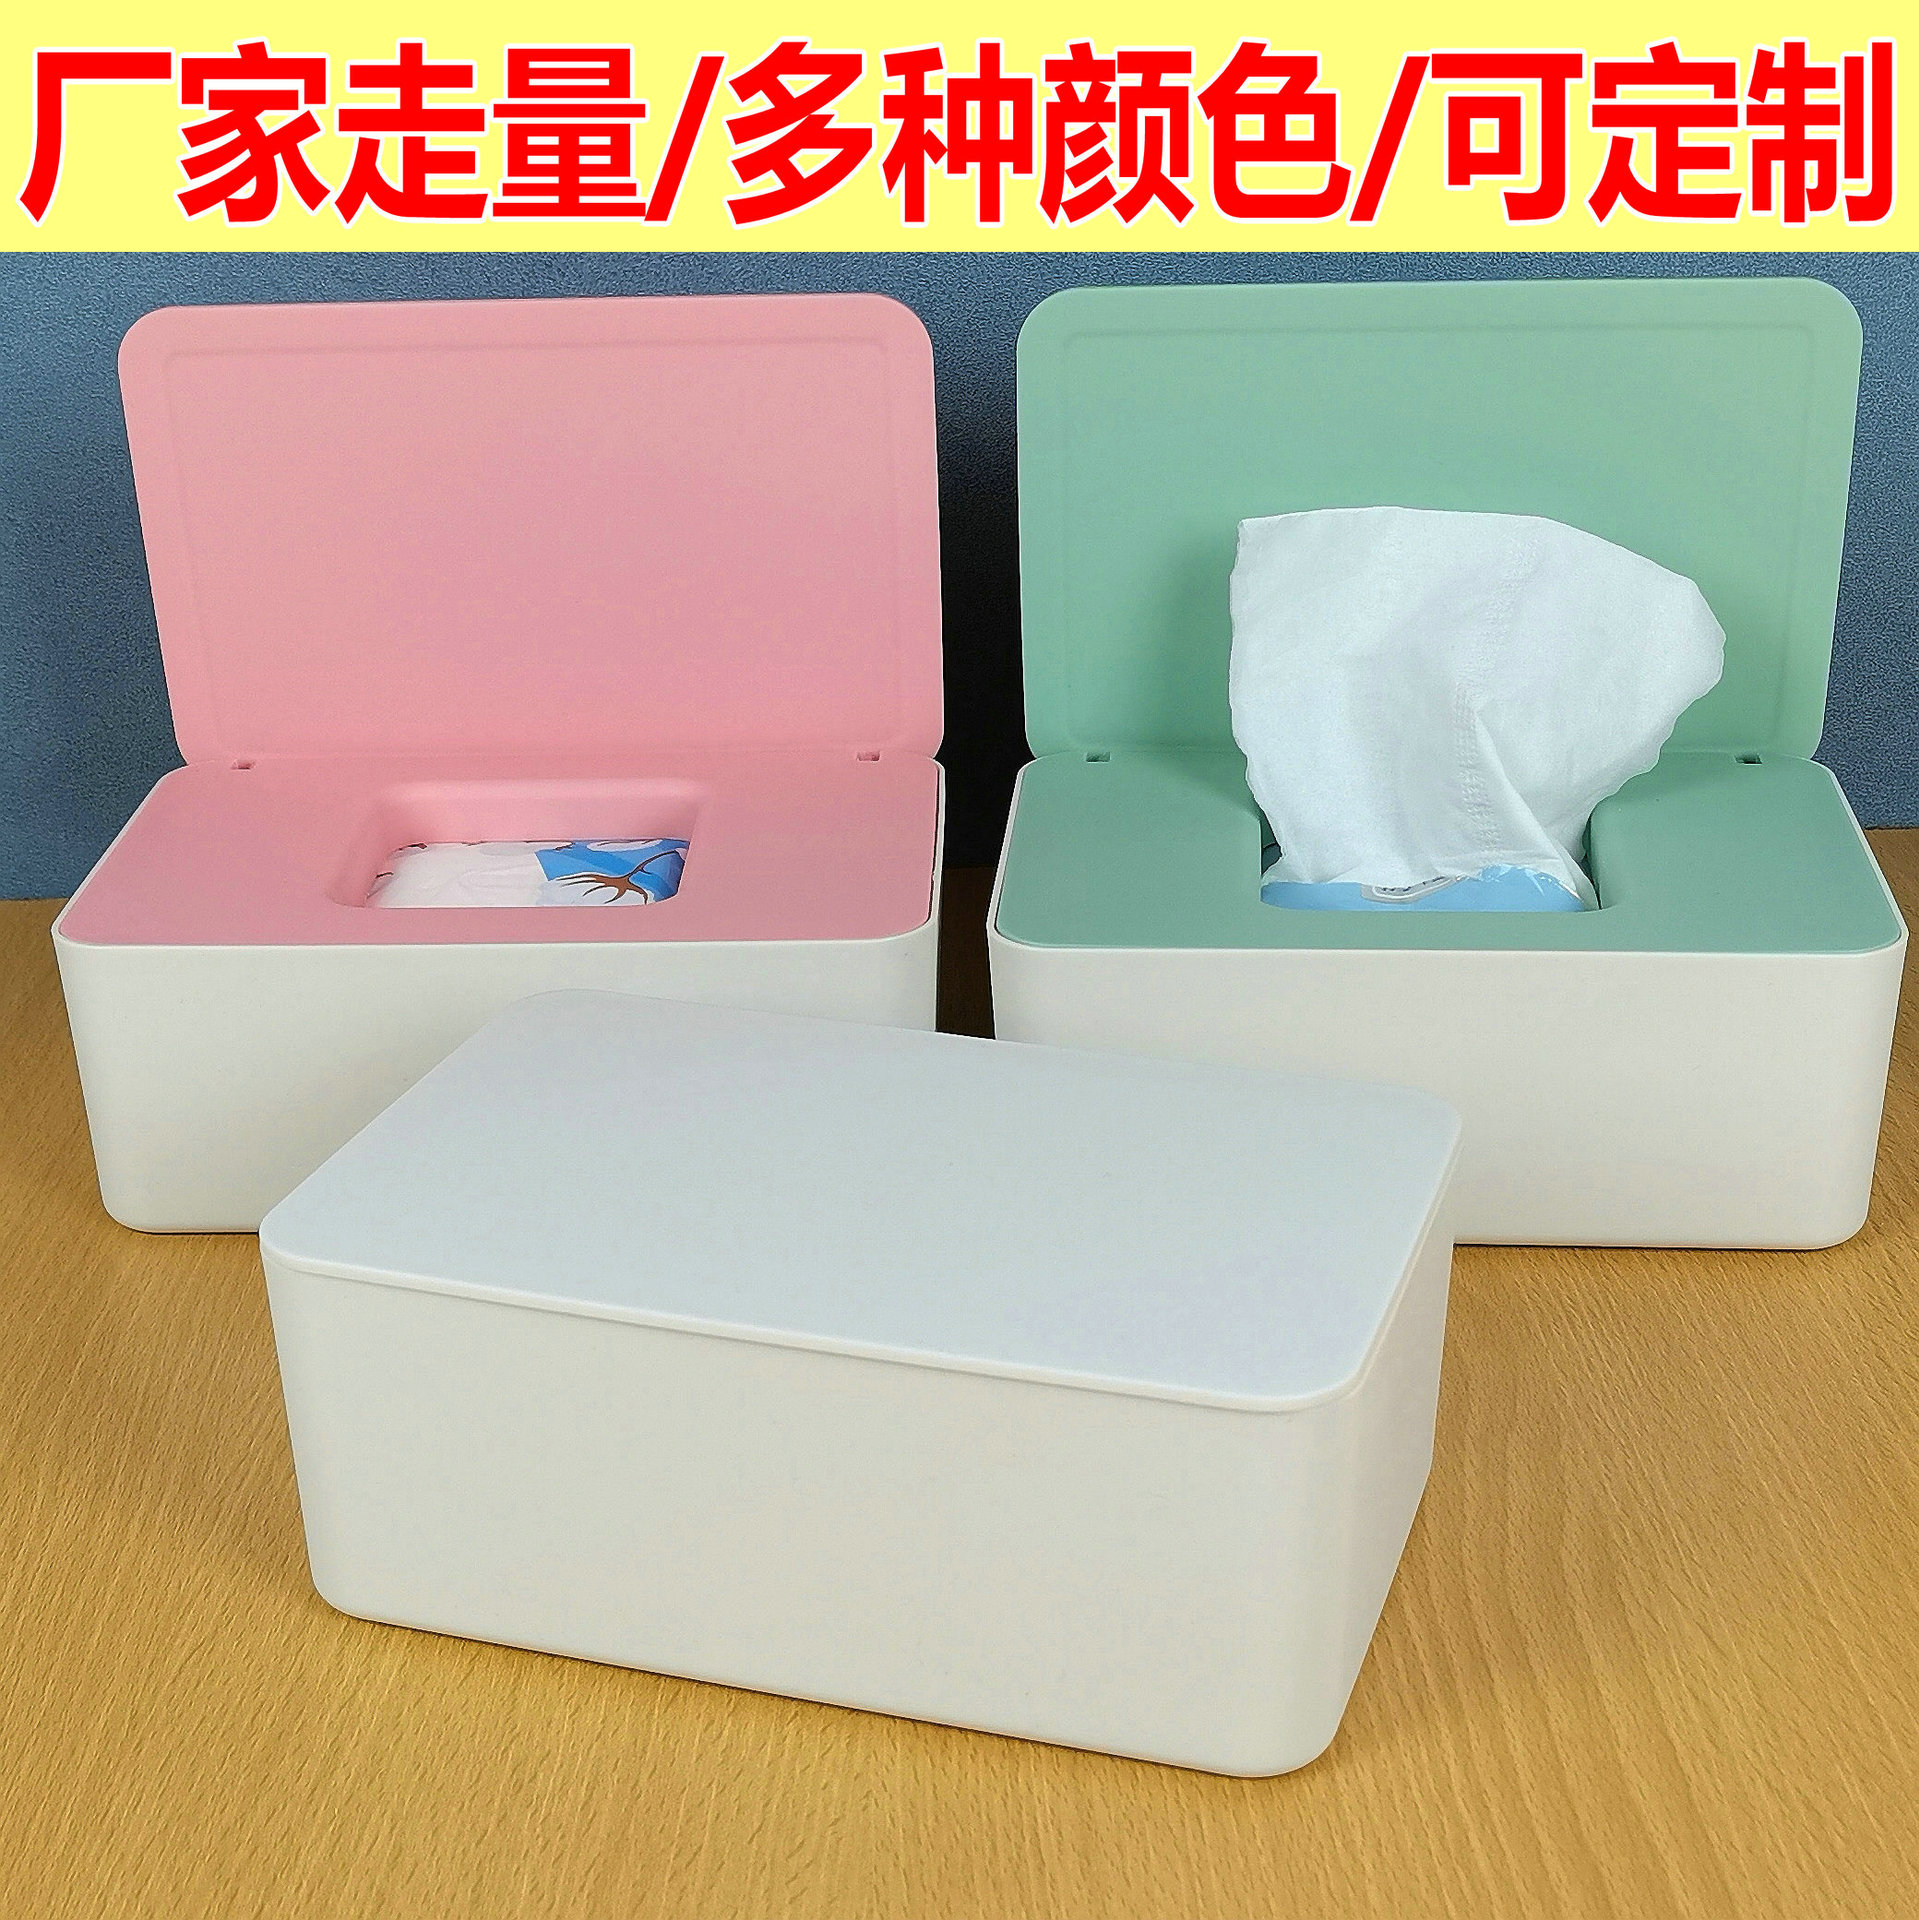 现货带盖湿纸巾盒子抽纸盒口罩盒收纳盒家用防尘桌面密封湿巾盒